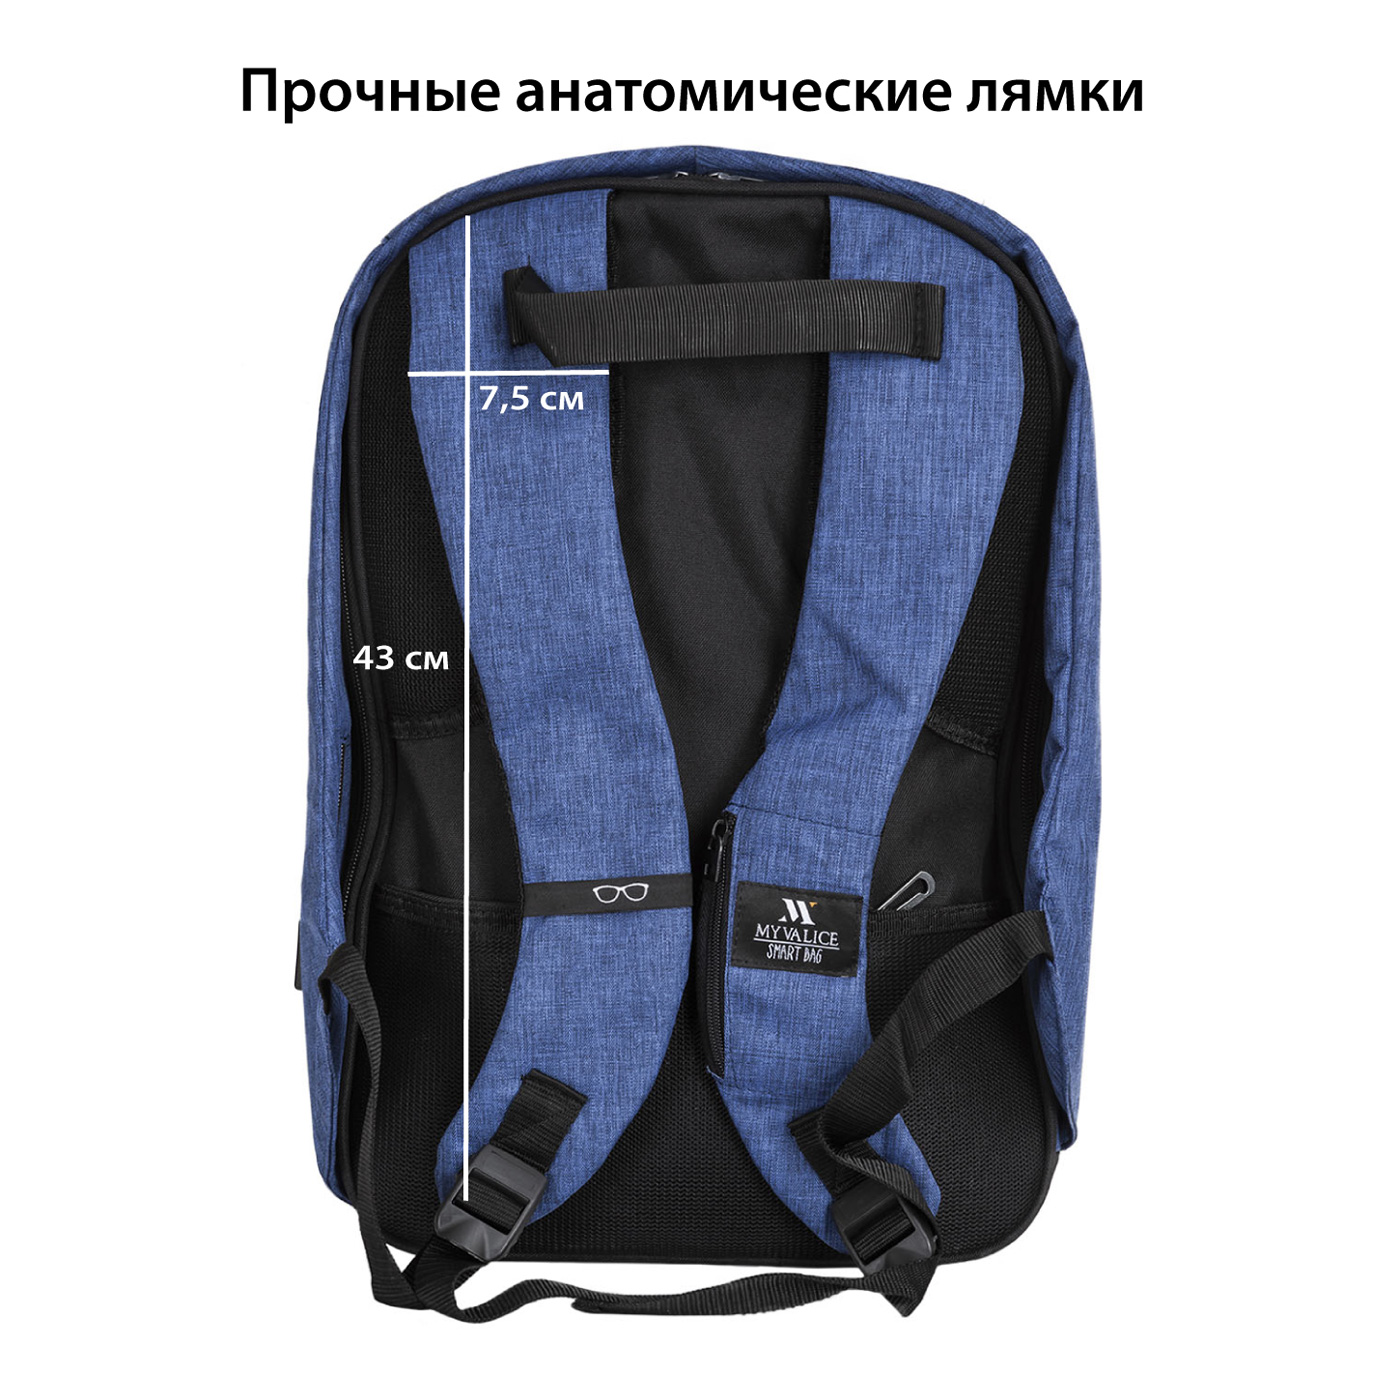 Картинка Рюкзак SUPRA STB-9002, Dabadi Blue по разумной цене купить в интернет магазине mall.su